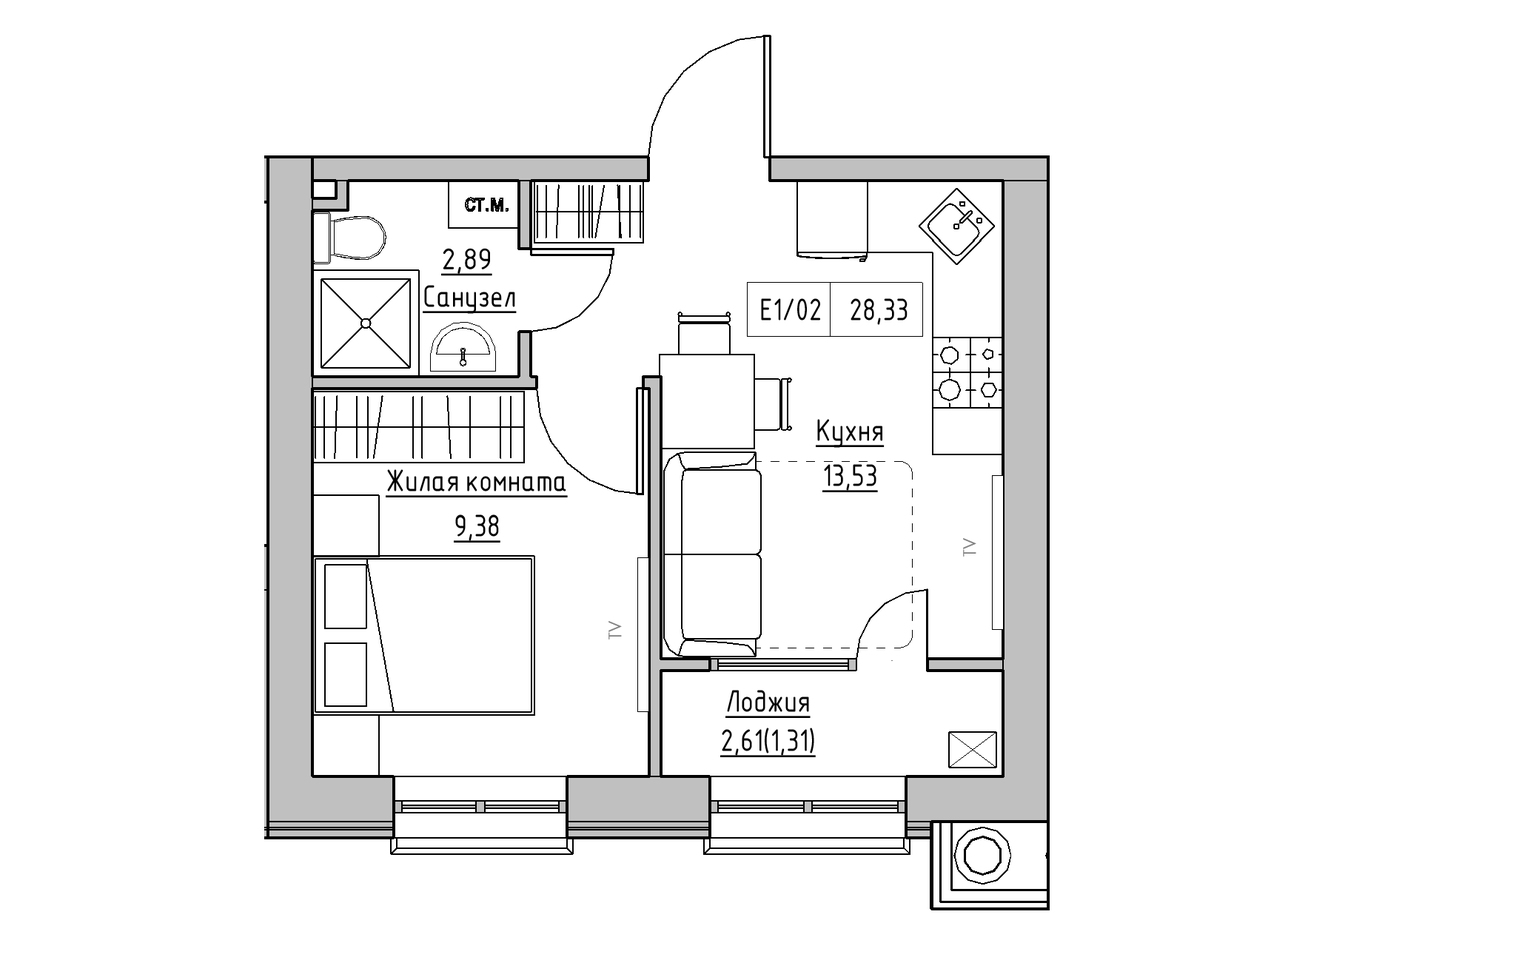 Планировка 1-к квартира площей 28.33м2, KS-009-04/0013.